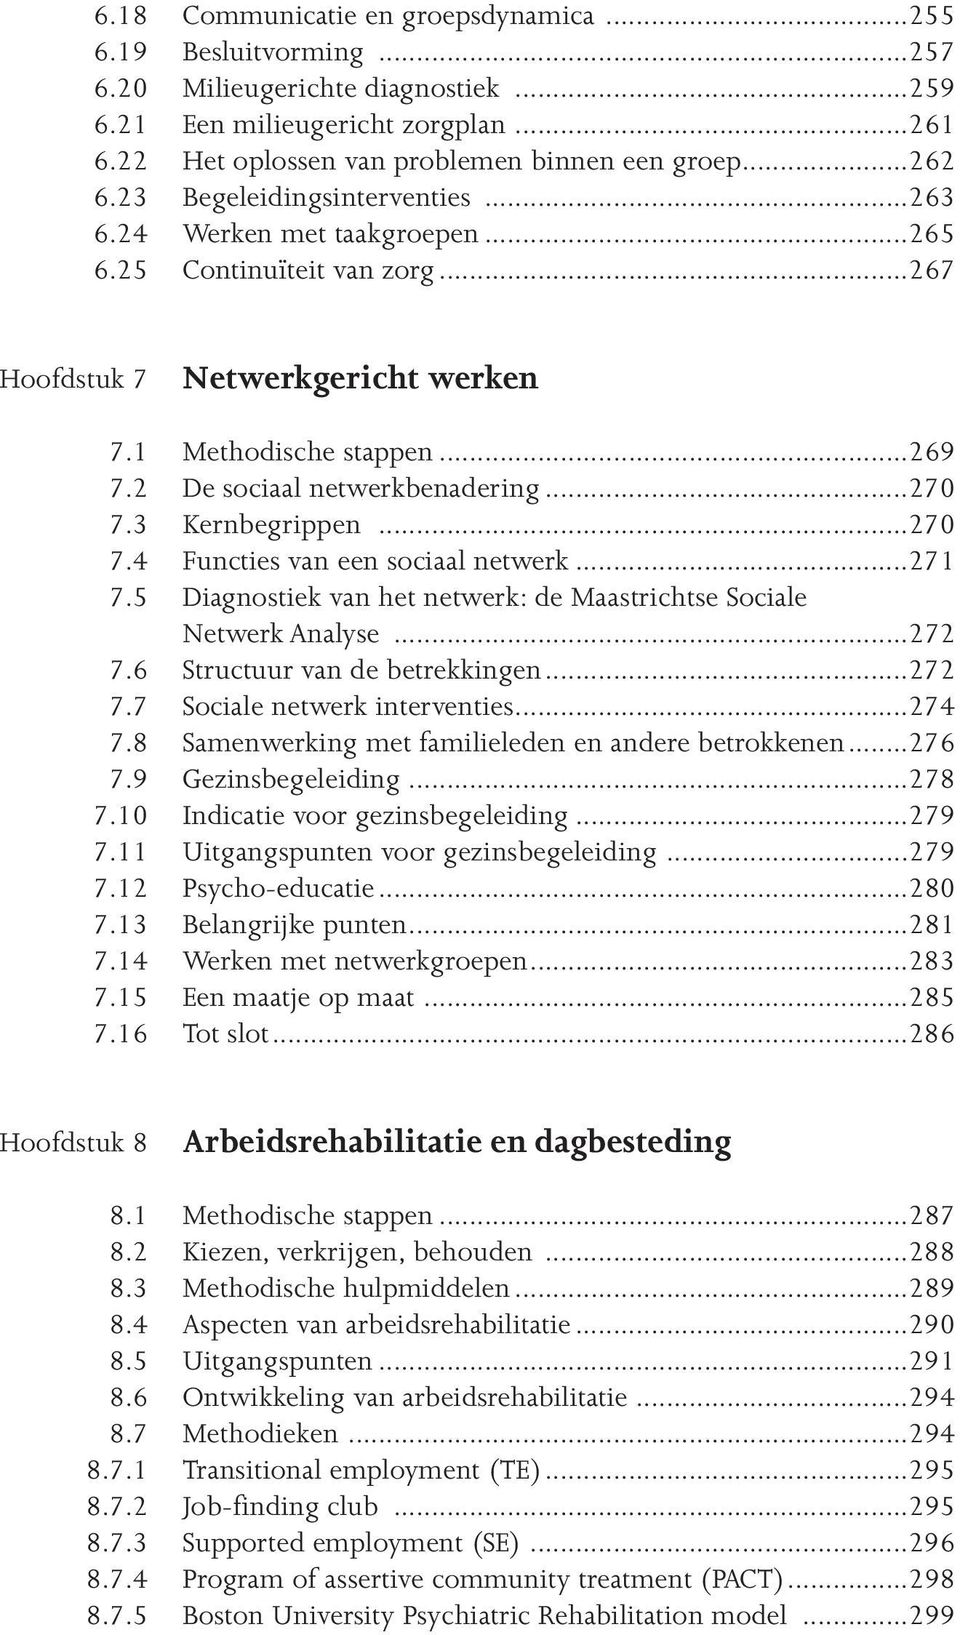 ..270 7.3 Kernbegrippen...270 7.4 Functies van een sociaal netwerk...271 7.5 Diagnostiek van het netwerk: de Maastrichtse Sociale Netwerk Analyse...272 7.6 Structuur van de betrekkingen...272 7.7 Sociale netwerk interventies.